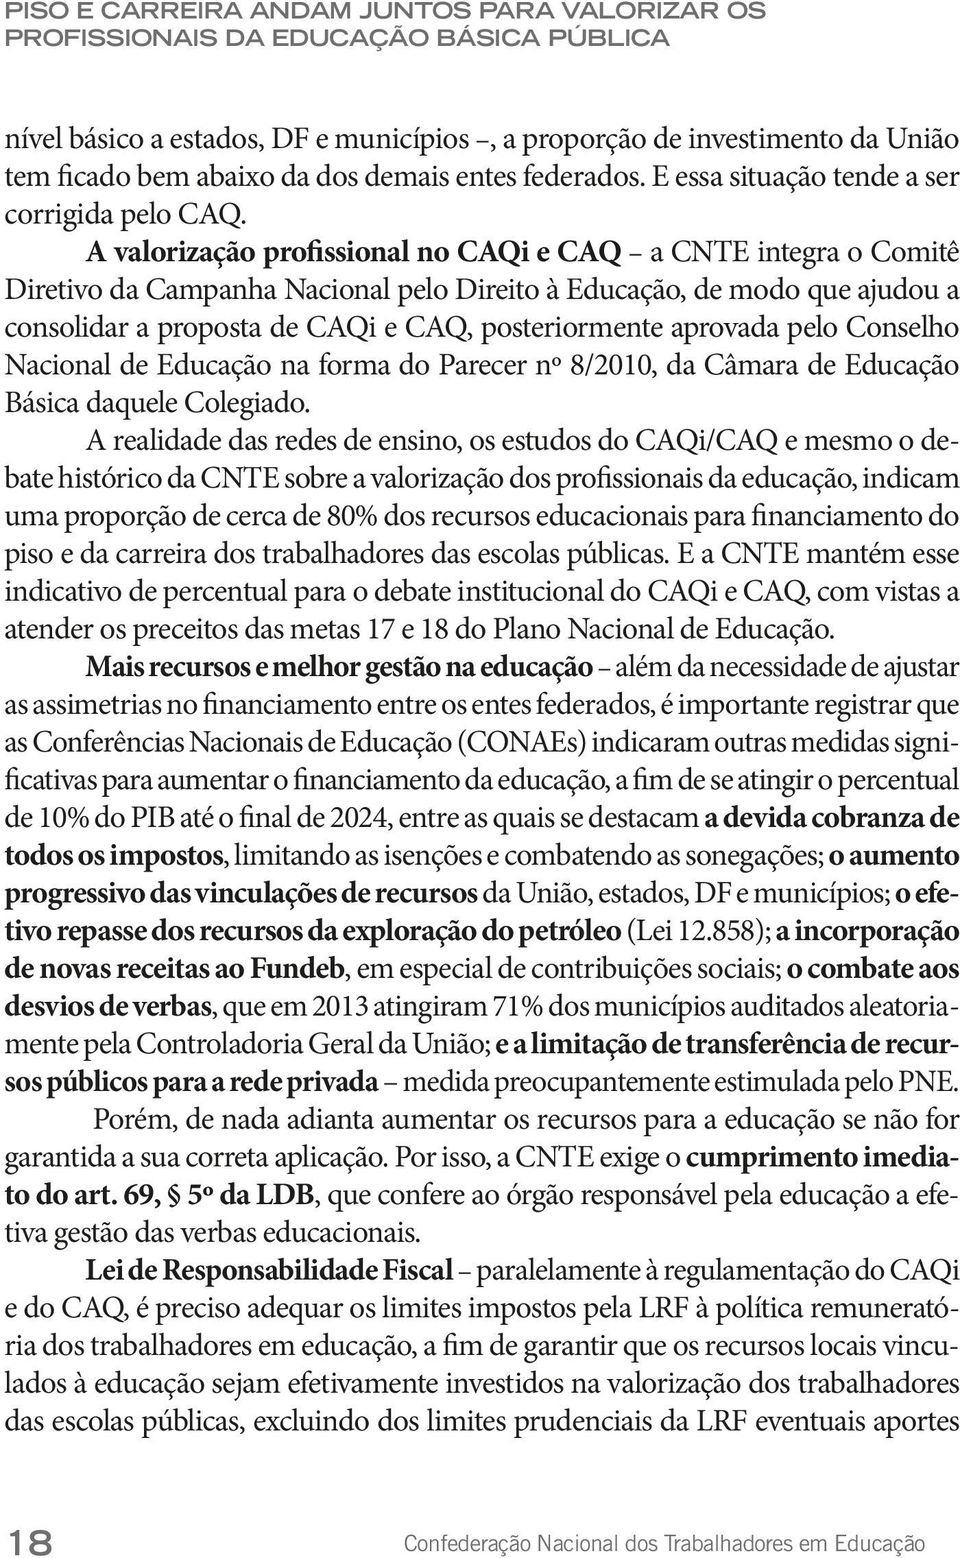 A valorização profissional no CAQi e CAQ a CNTE integra o Comitê Diretivo da Campanha Nacional pelo Direito à Educação, de modo que ajudou a consolidar a proposta de CAQi e CAQ, posteriormente